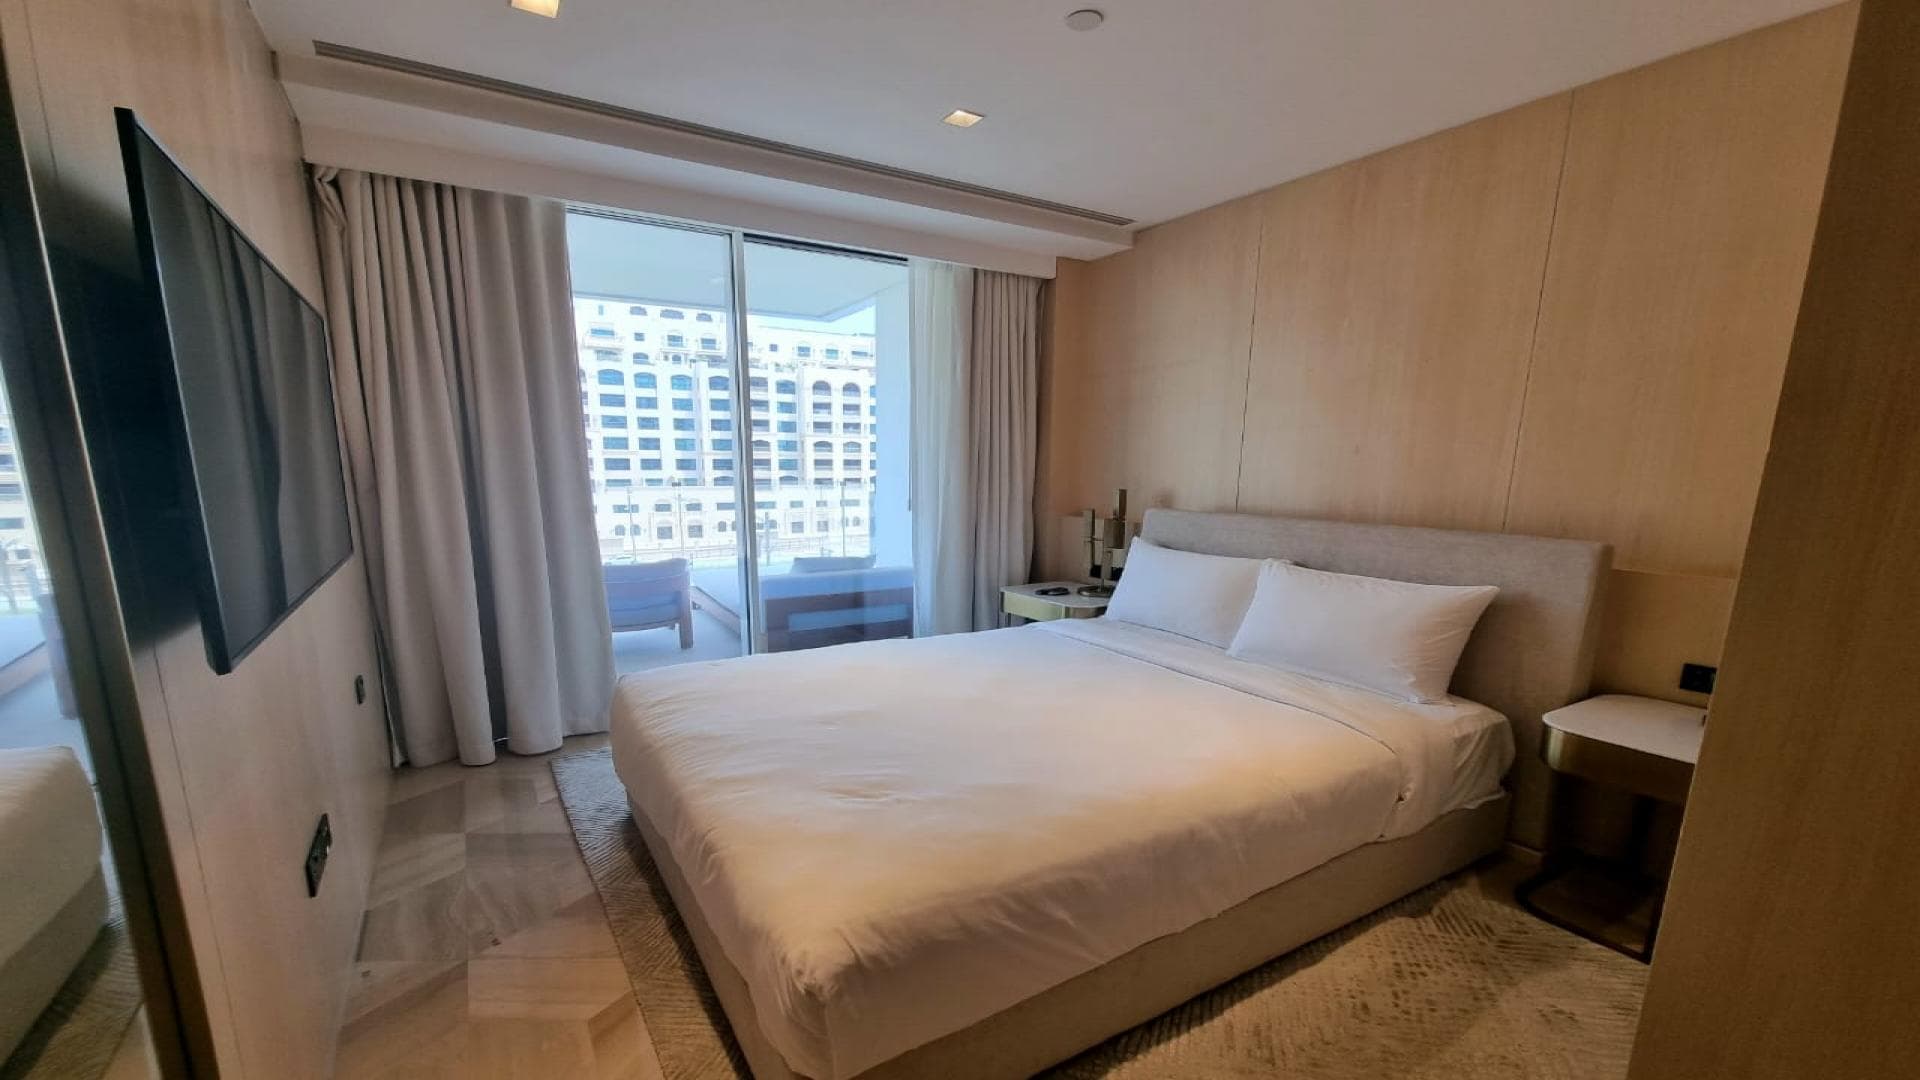 3 Bedroom Apartment For Rent Al Thamam 43 Lp37274 1e51a6a4461dd900.jpeg